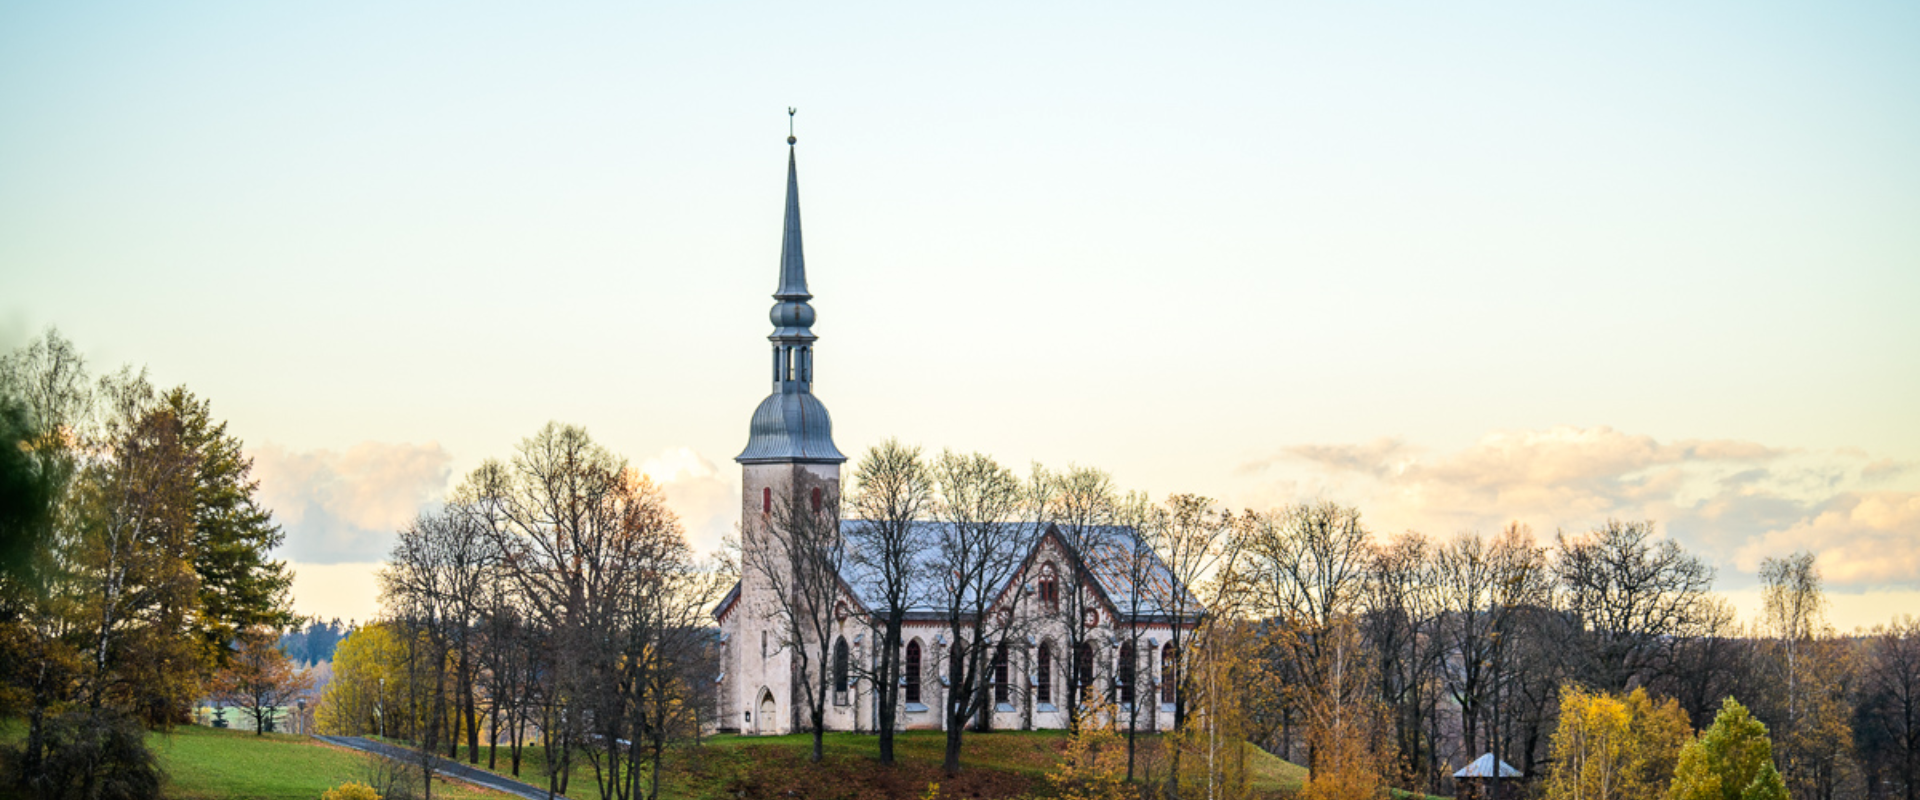 Lutherische Maarja-Kirche (Marienkirche) in Otepää